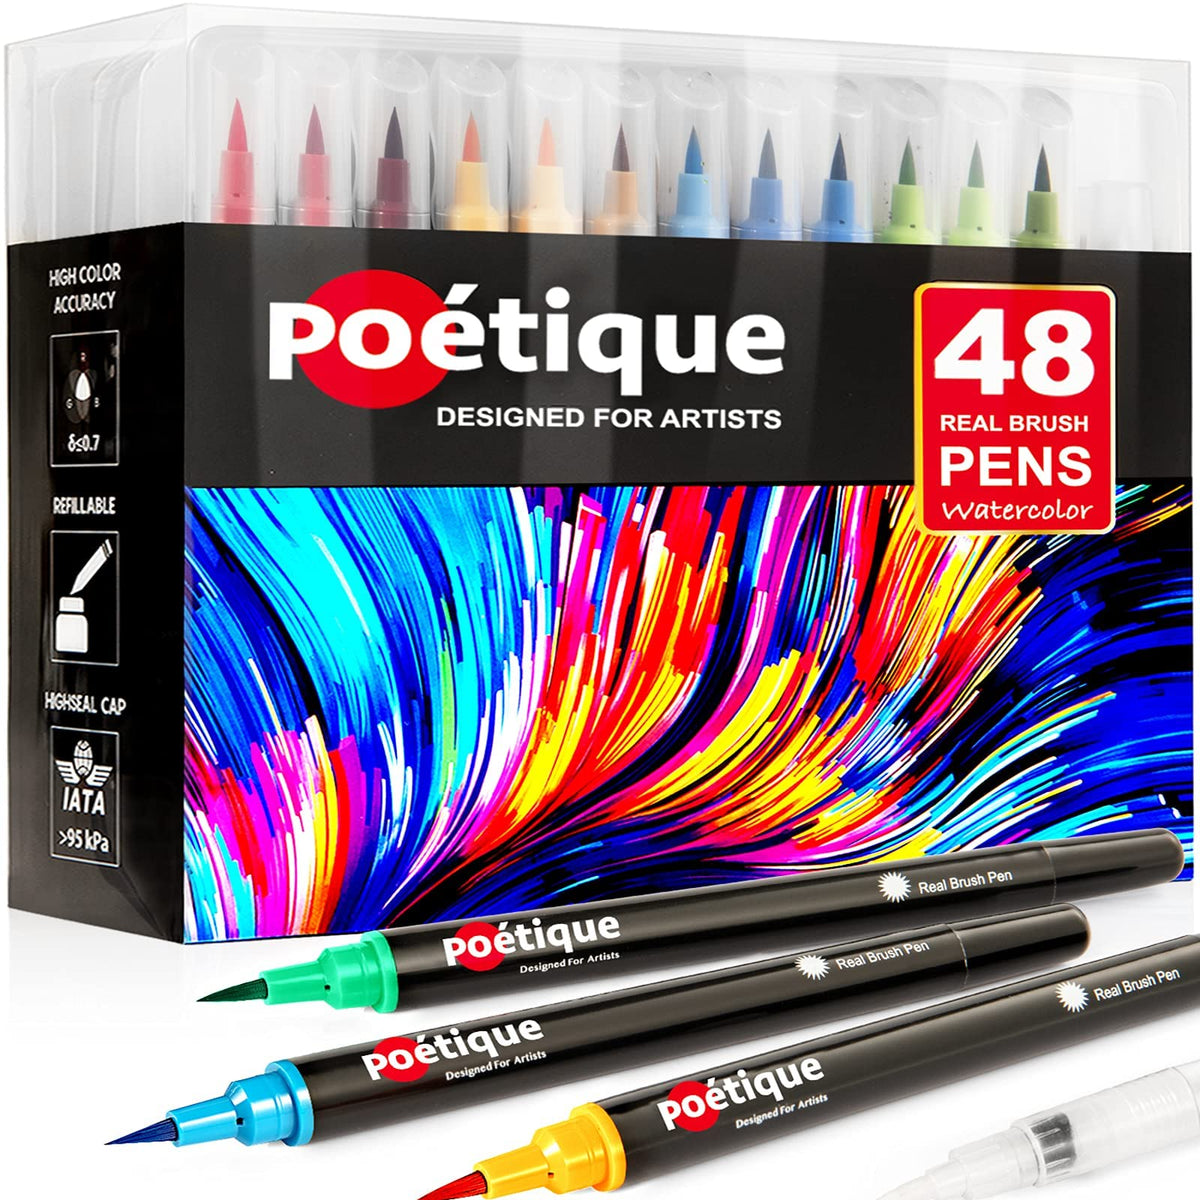 Colorya Watercolor Brush Pens - 50 Real Nylon Tip Art Pens & 2 Water Tank  Brushes - Watercolor Pens for Adult Coloring Books, Watercolor Painting